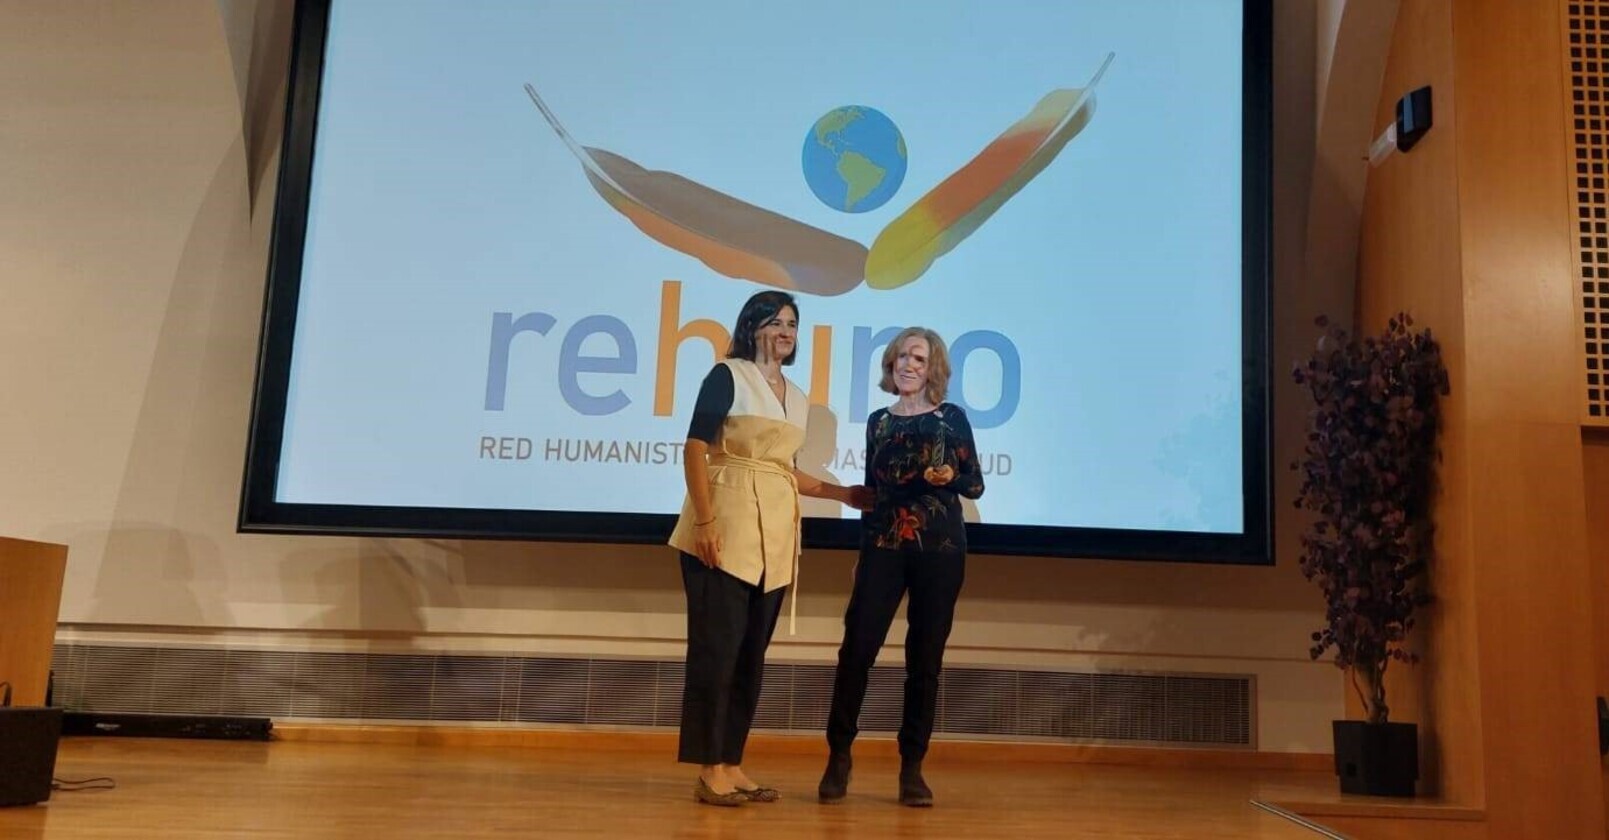 REHUNO Salud erhält die Auszeichnung für Sensibilisierung und Kommunikation in der Palliativpflege